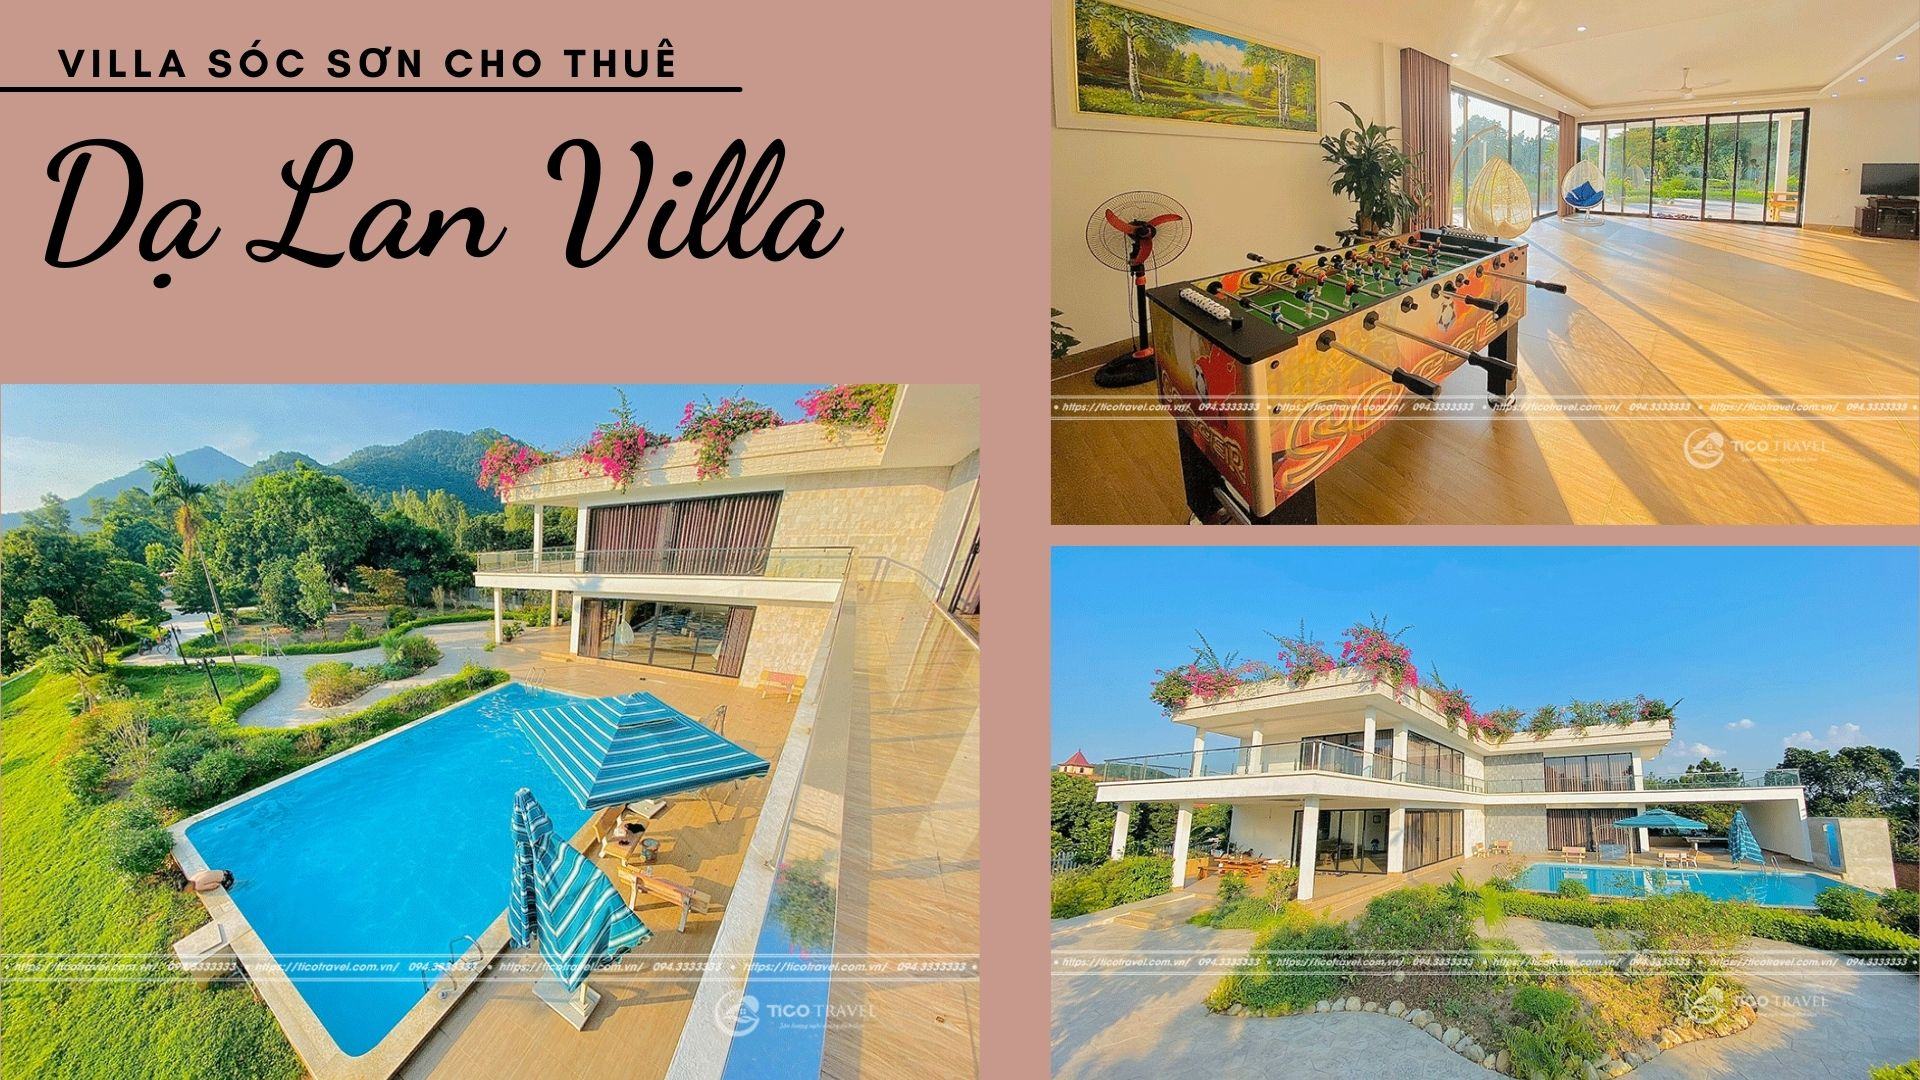 Dạ Lan Villa - Villa nghỉ dưỡng giá rẻ siêu đẹp tại Sóc Sơn 